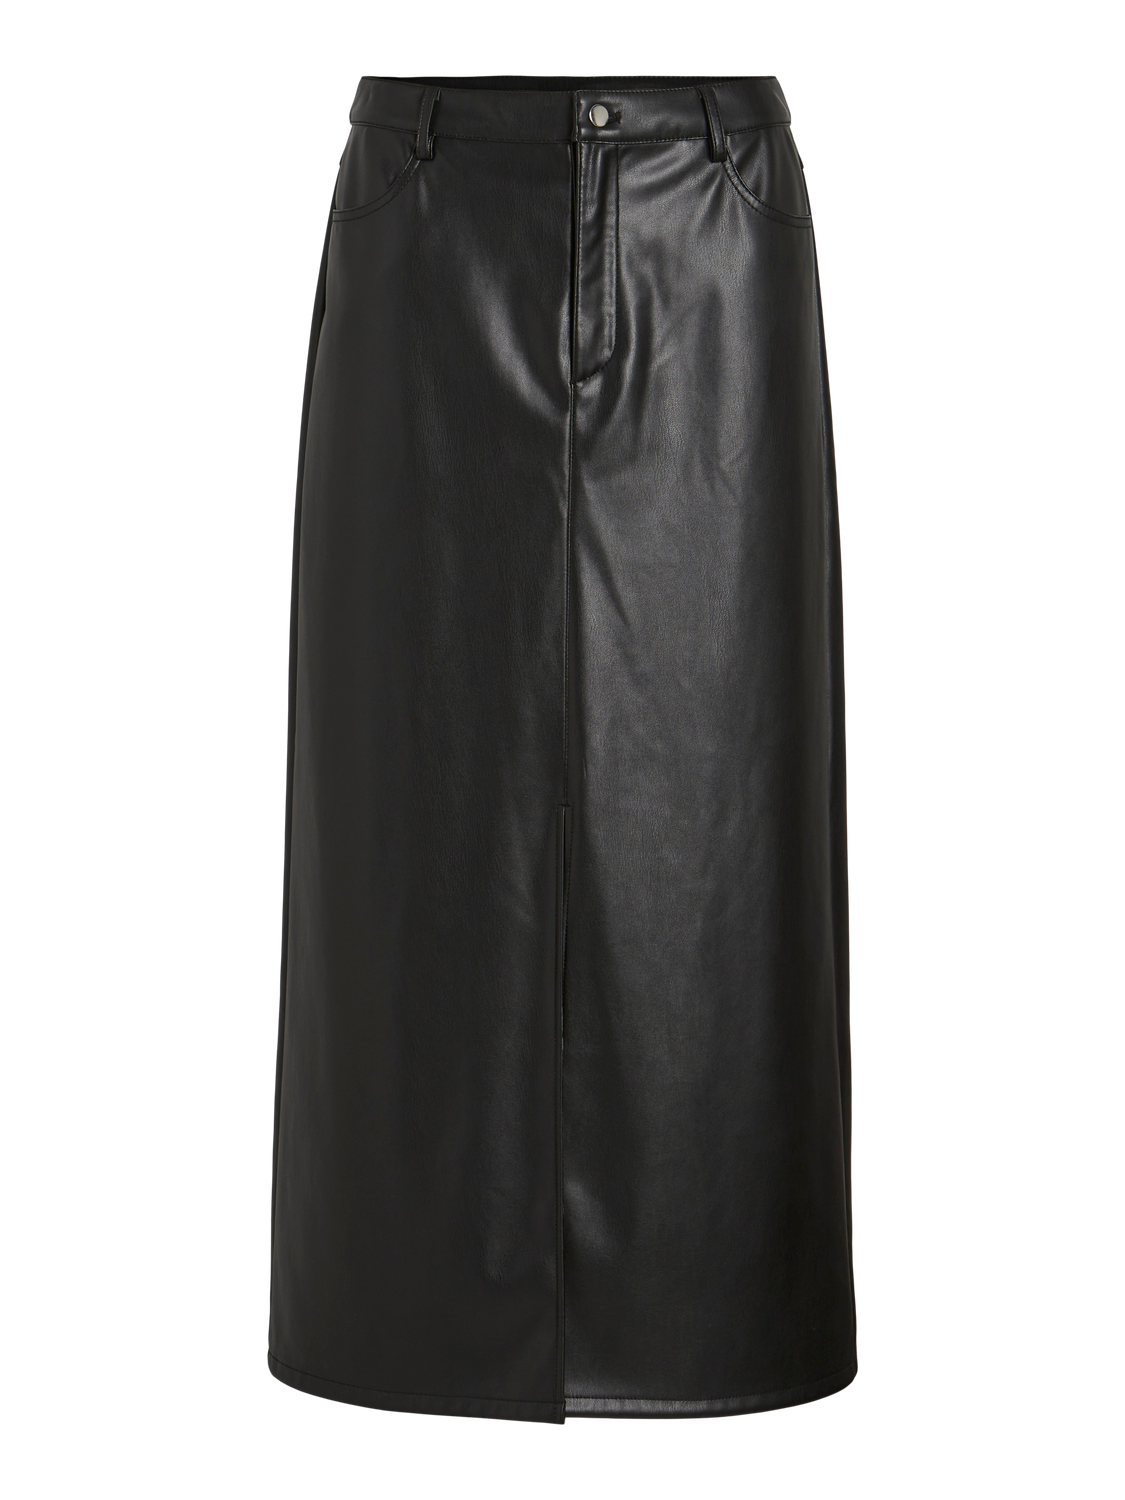 VISINA Skirt - Black